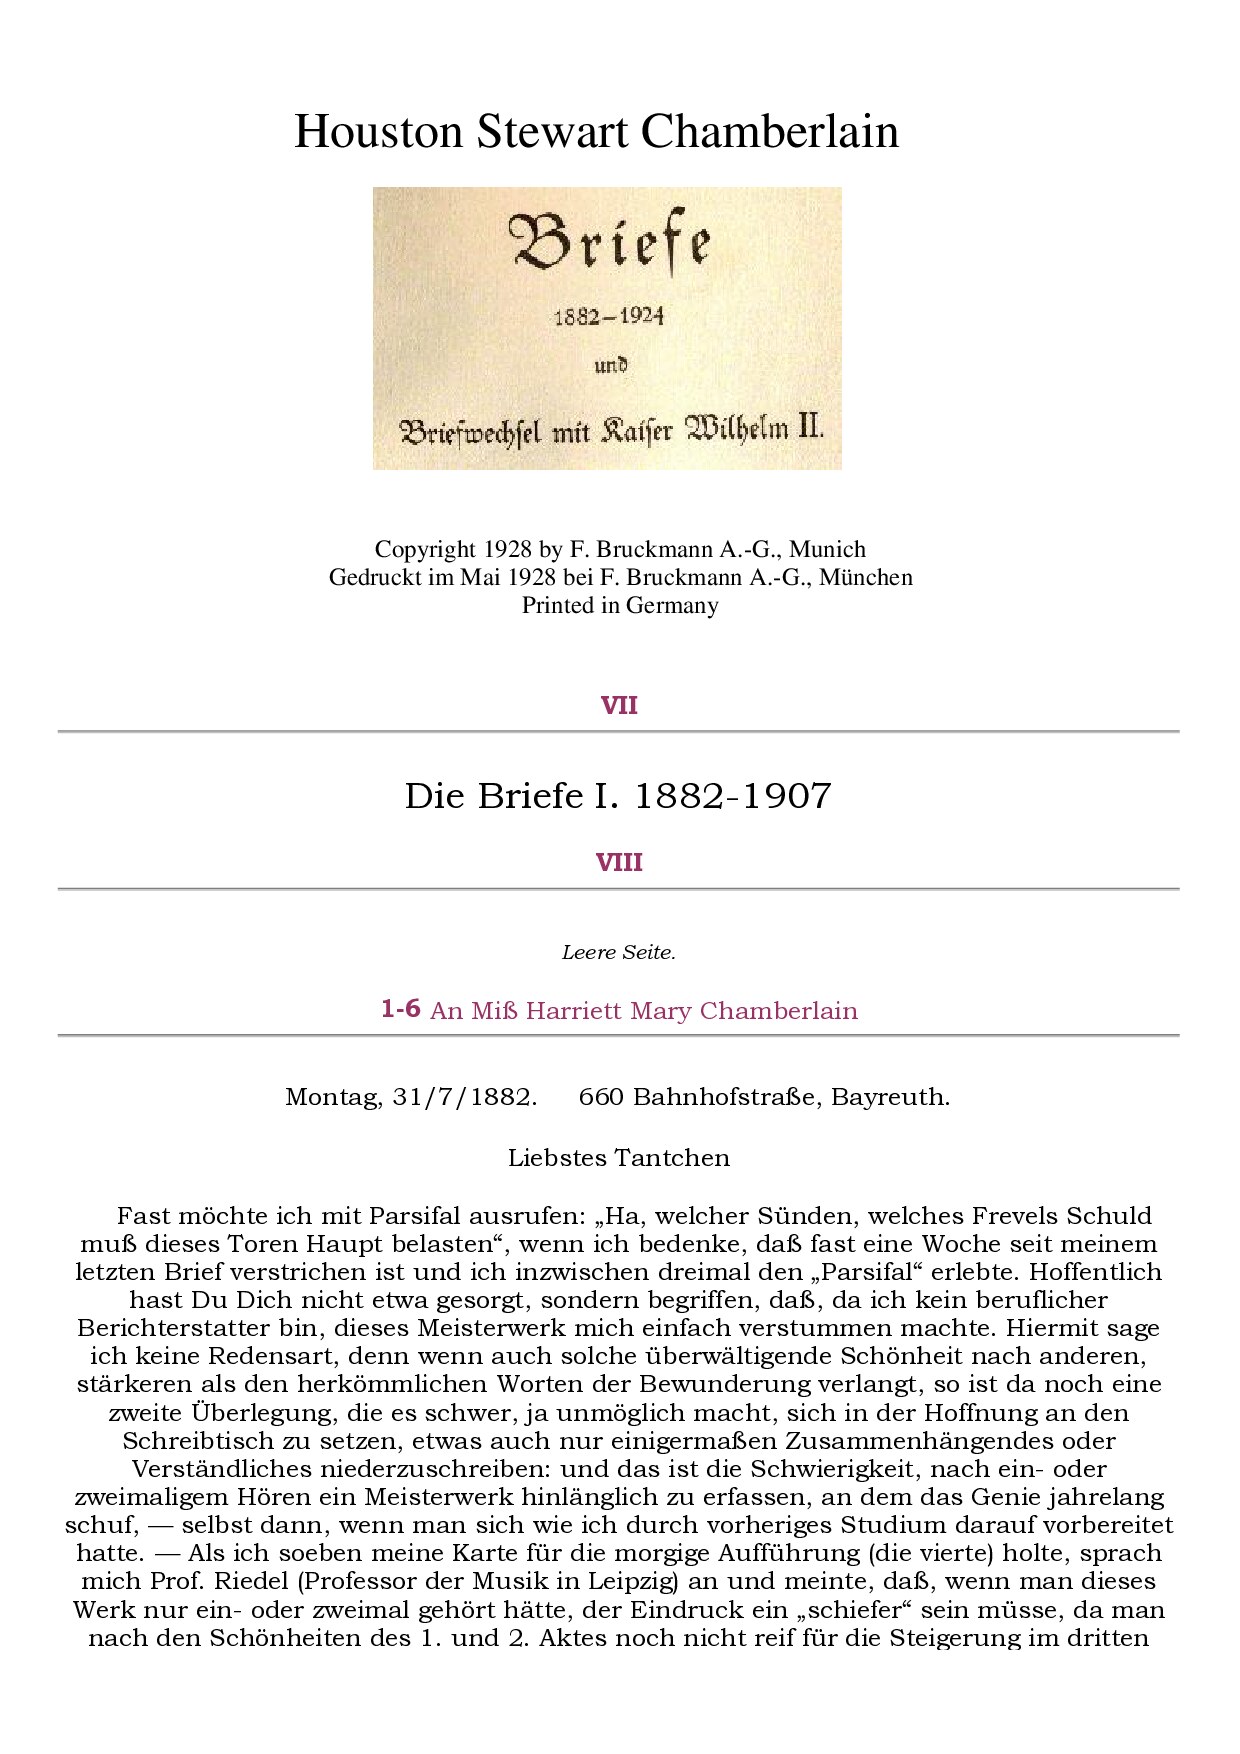 Briefe 1882-1924 und Briefwechsel mit Kaiser Wilhelm II. - Band 1 (1928, 121 S., Text)